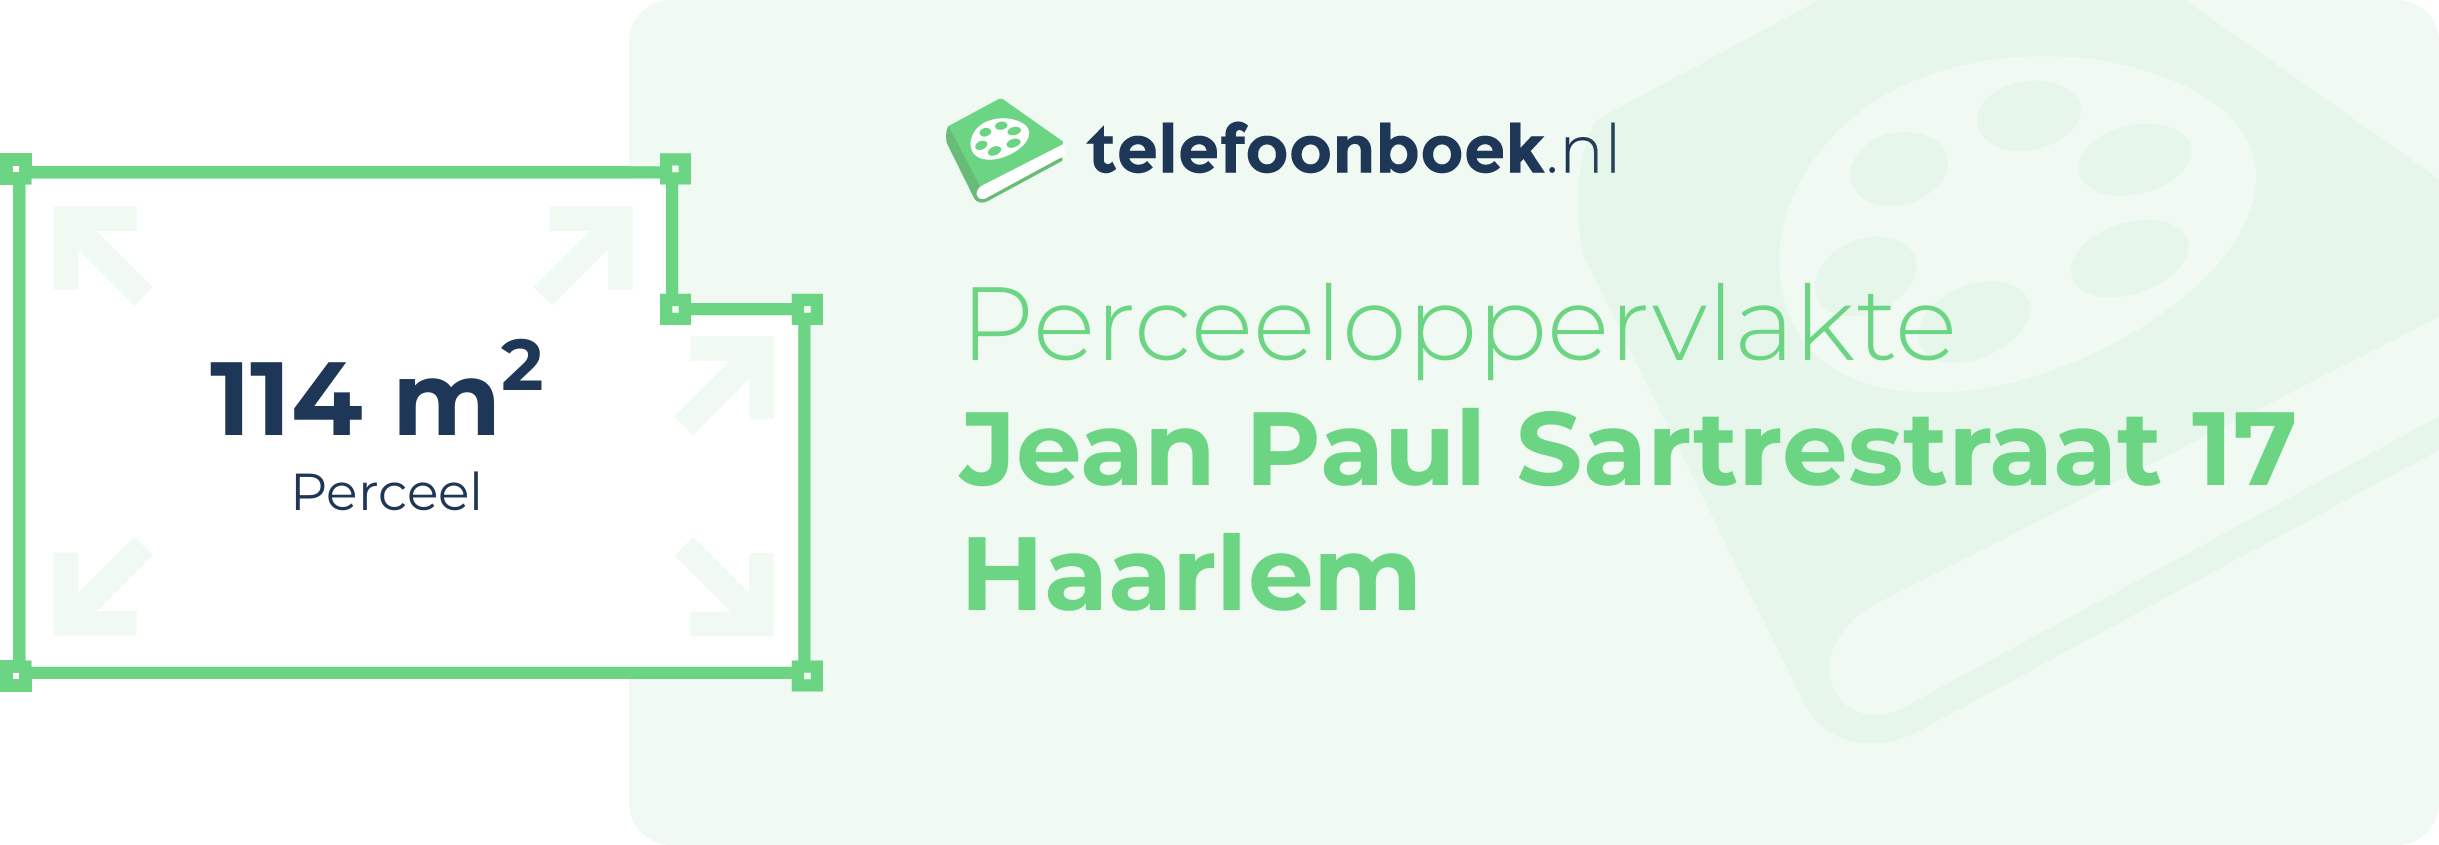 Perceeloppervlakte Jean Paul Sartrestraat 17 Haarlem